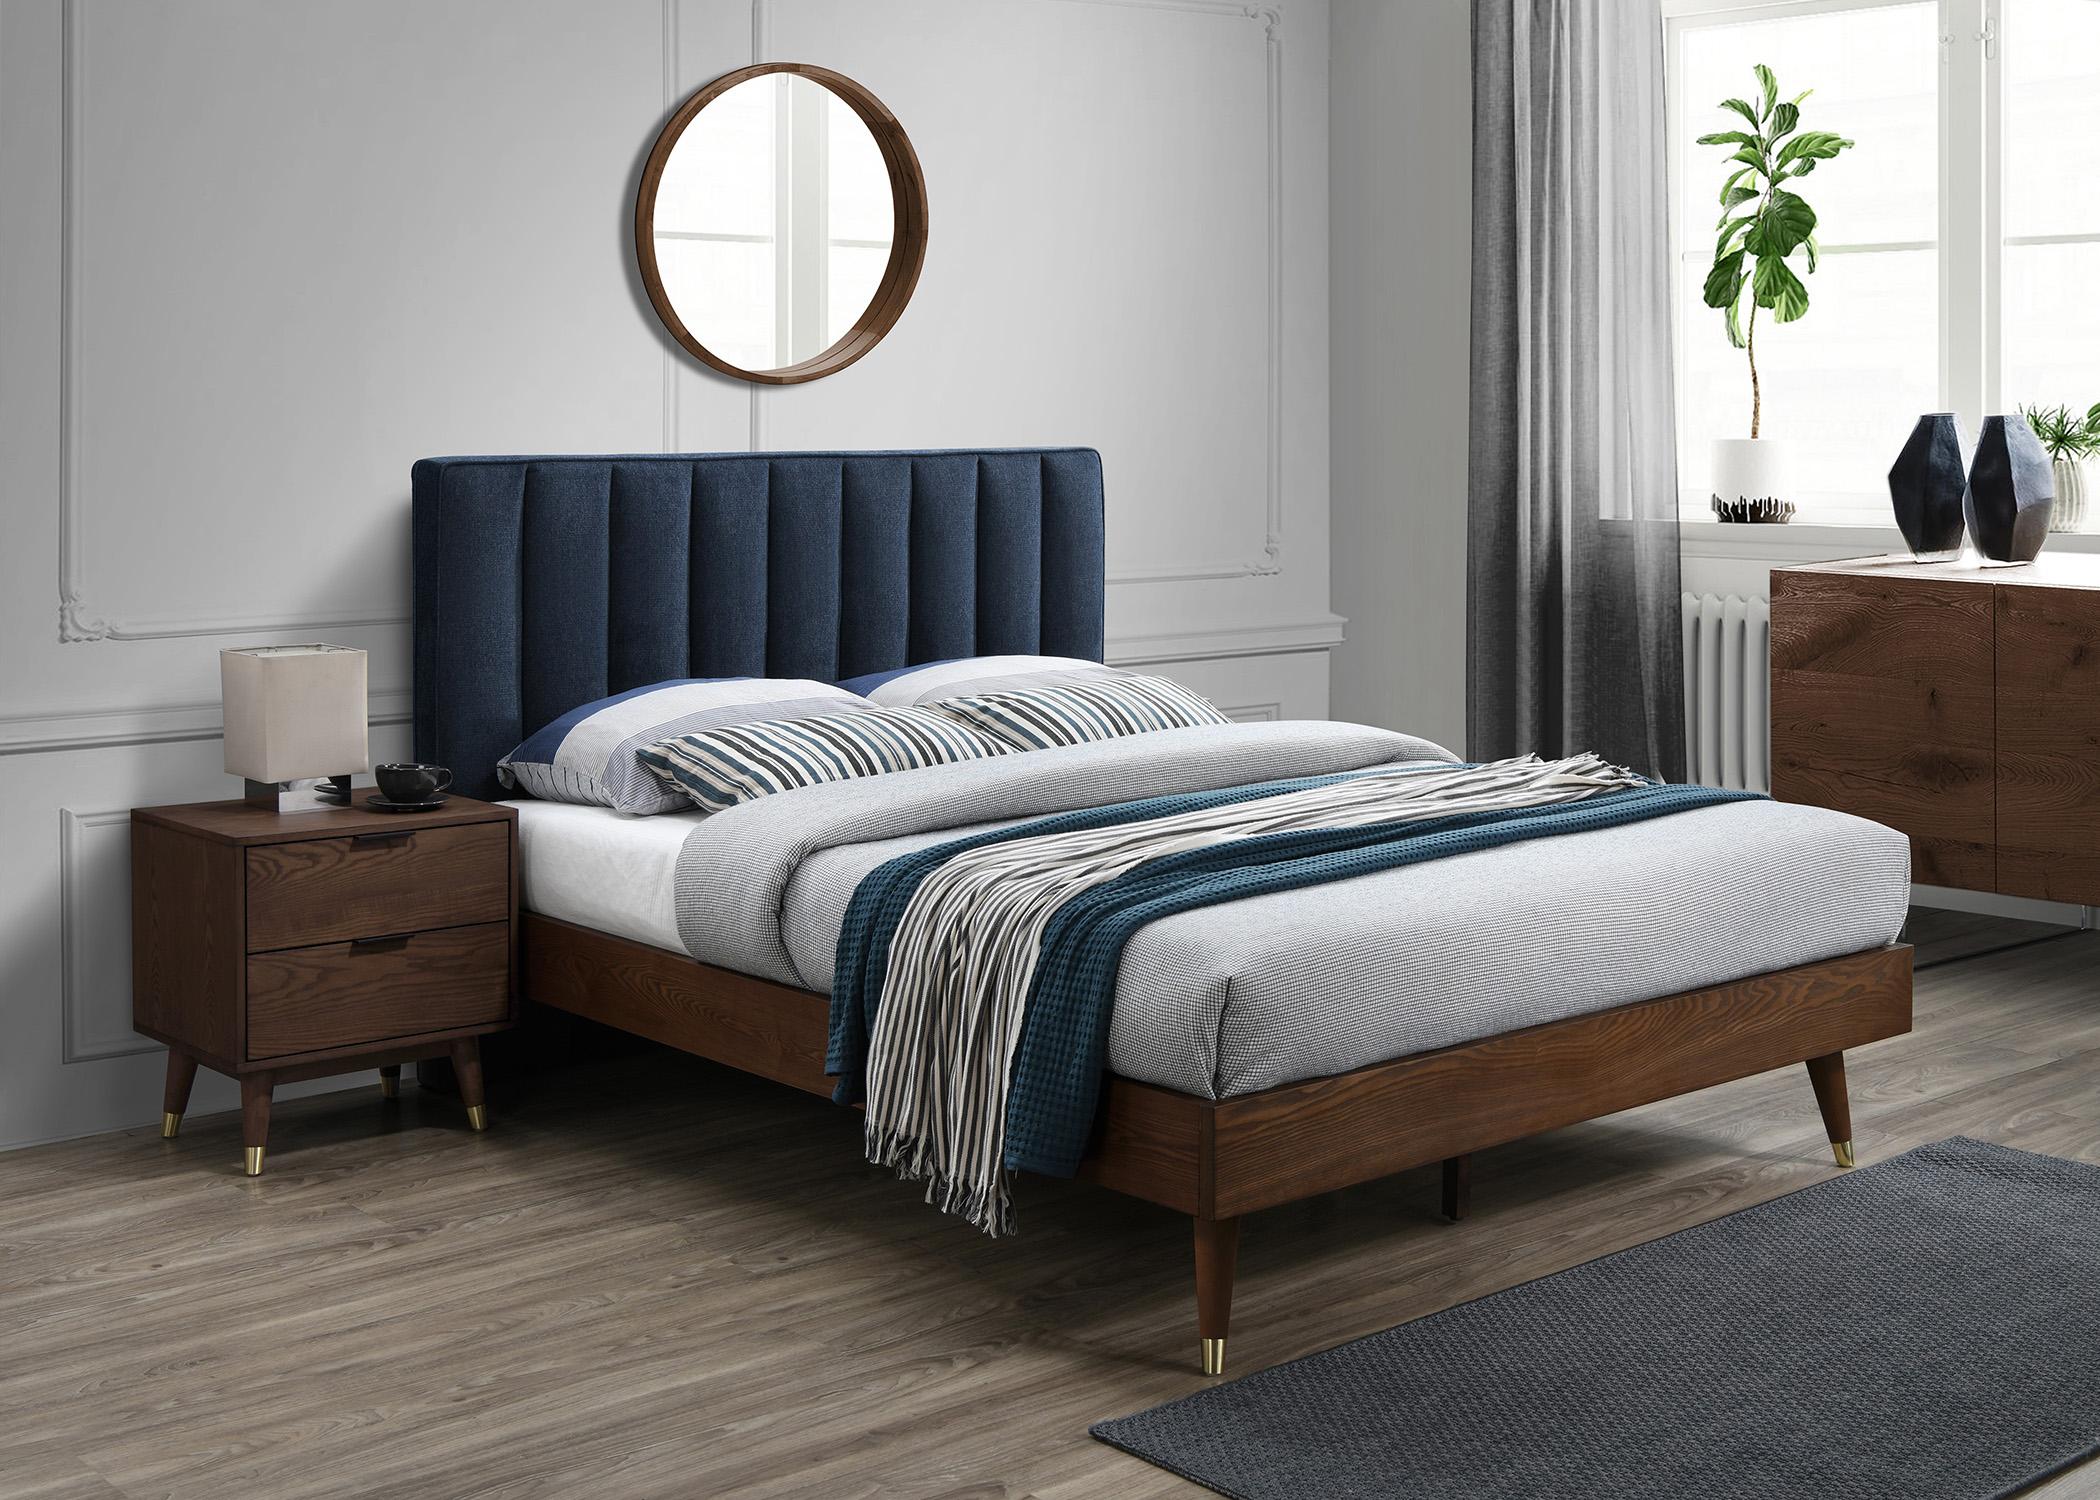 

    
VanceNavy-K Meridian Furniture Platform Bed
